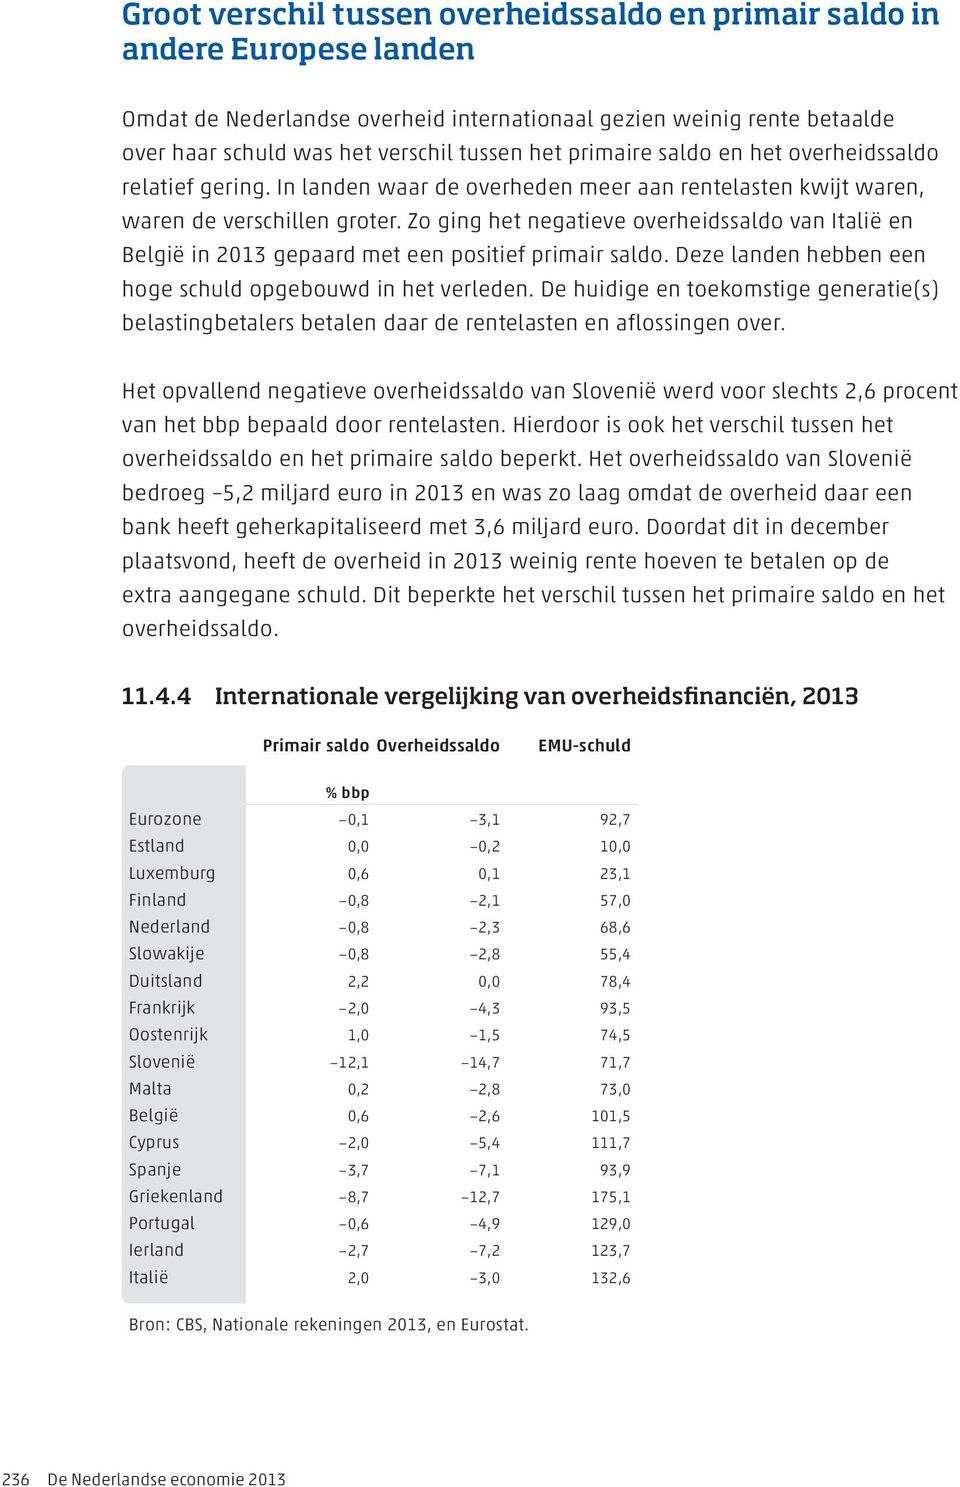 Zo ging het negatieve overheidssaldo van Italië en België in 2013 gepaard met een positief primair saldo. Deze landen hebben een hoge schuld opgebouwd in het verleden.